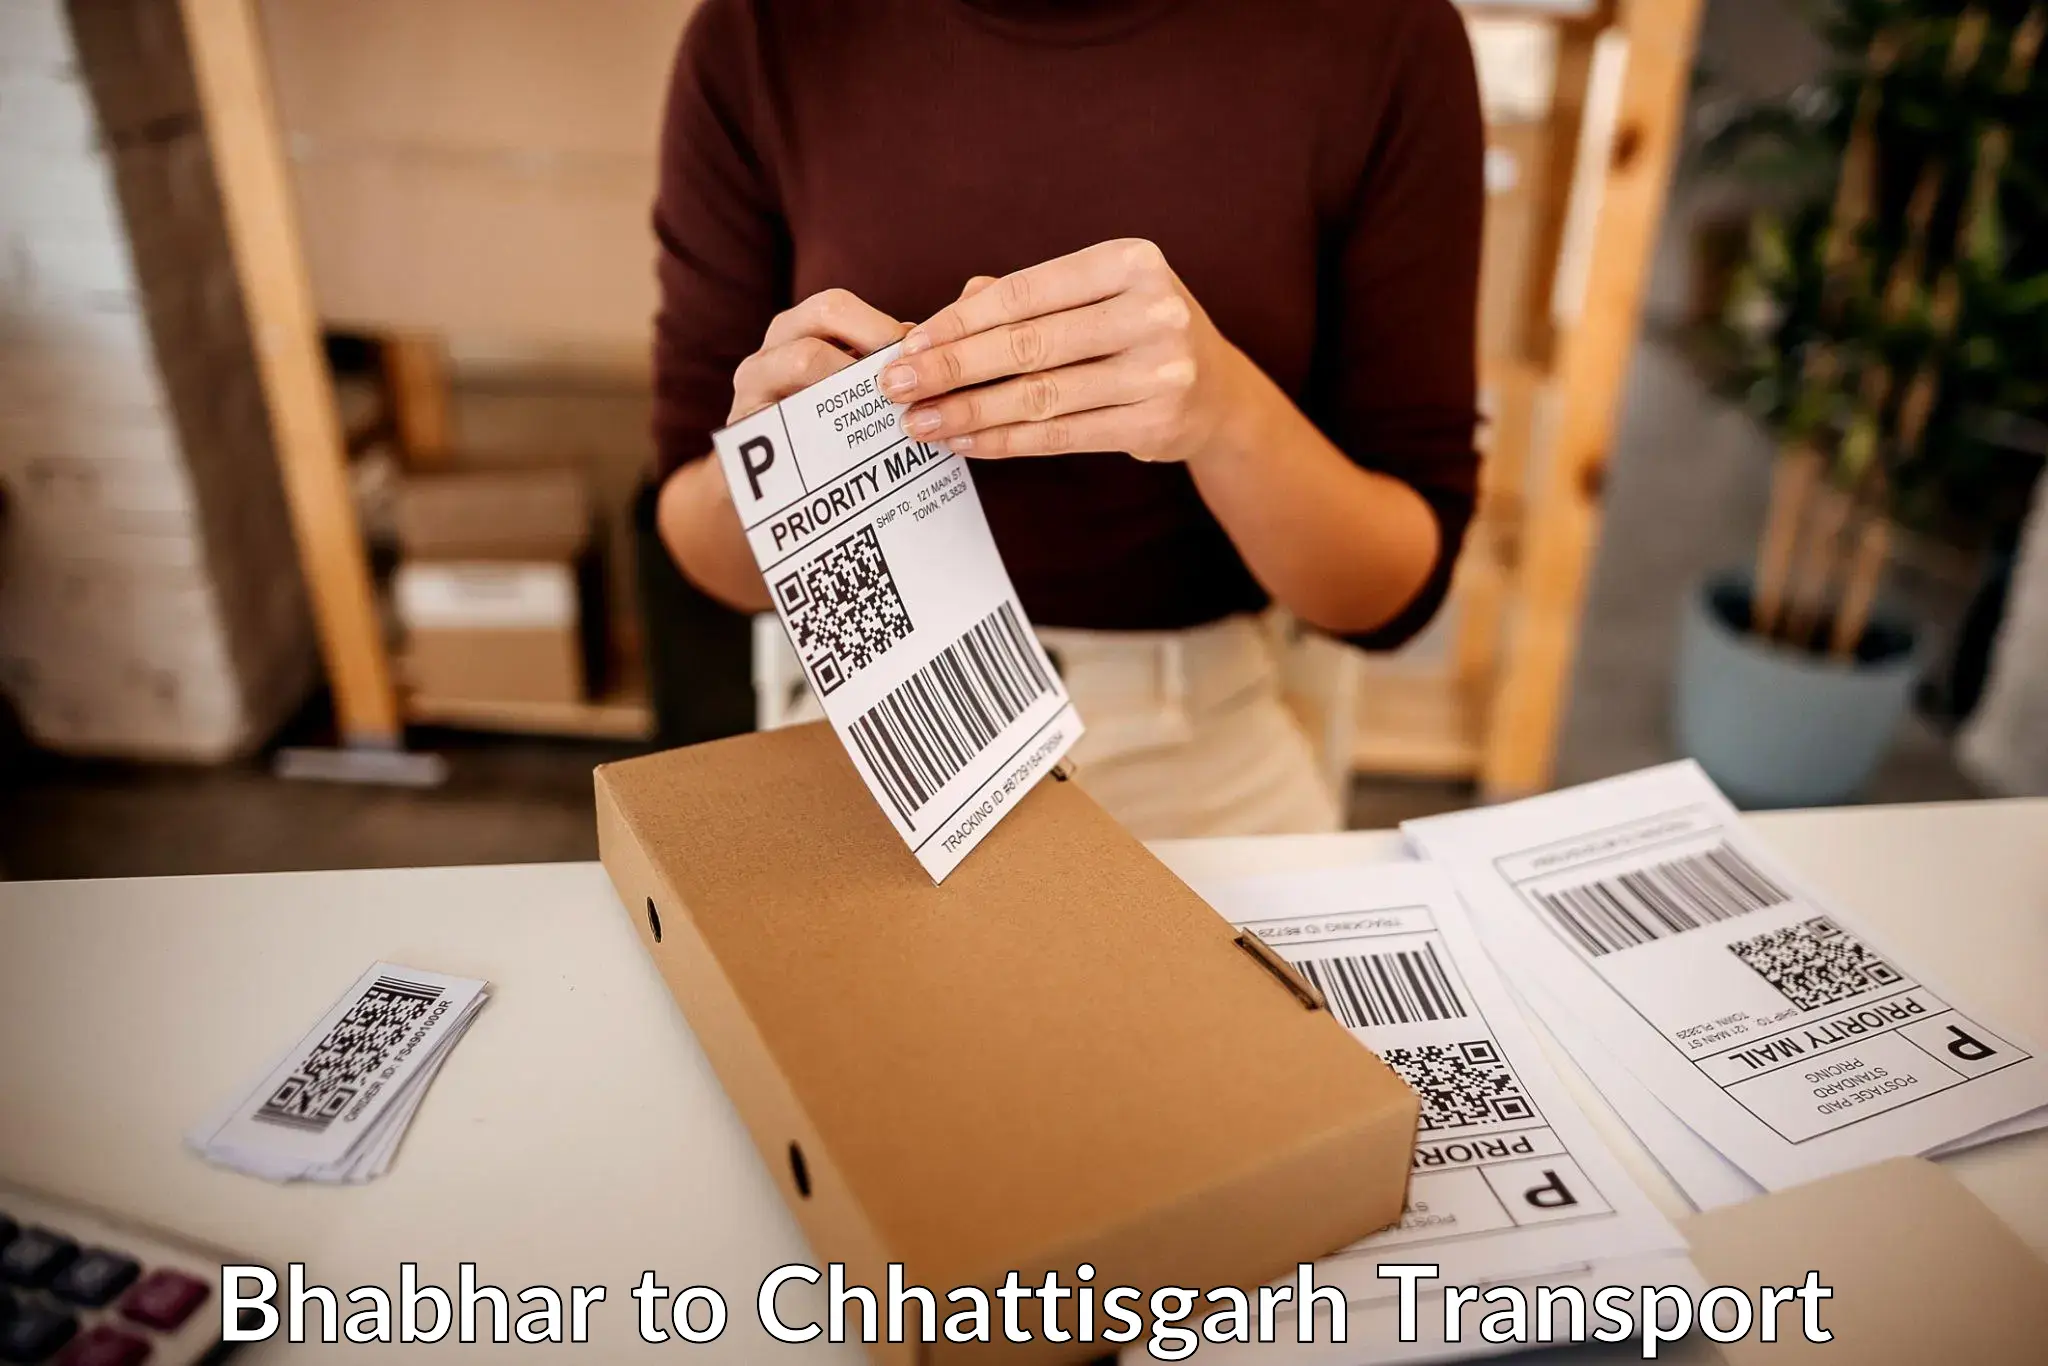 Daily parcel service transport Bhabhar to Pandariya